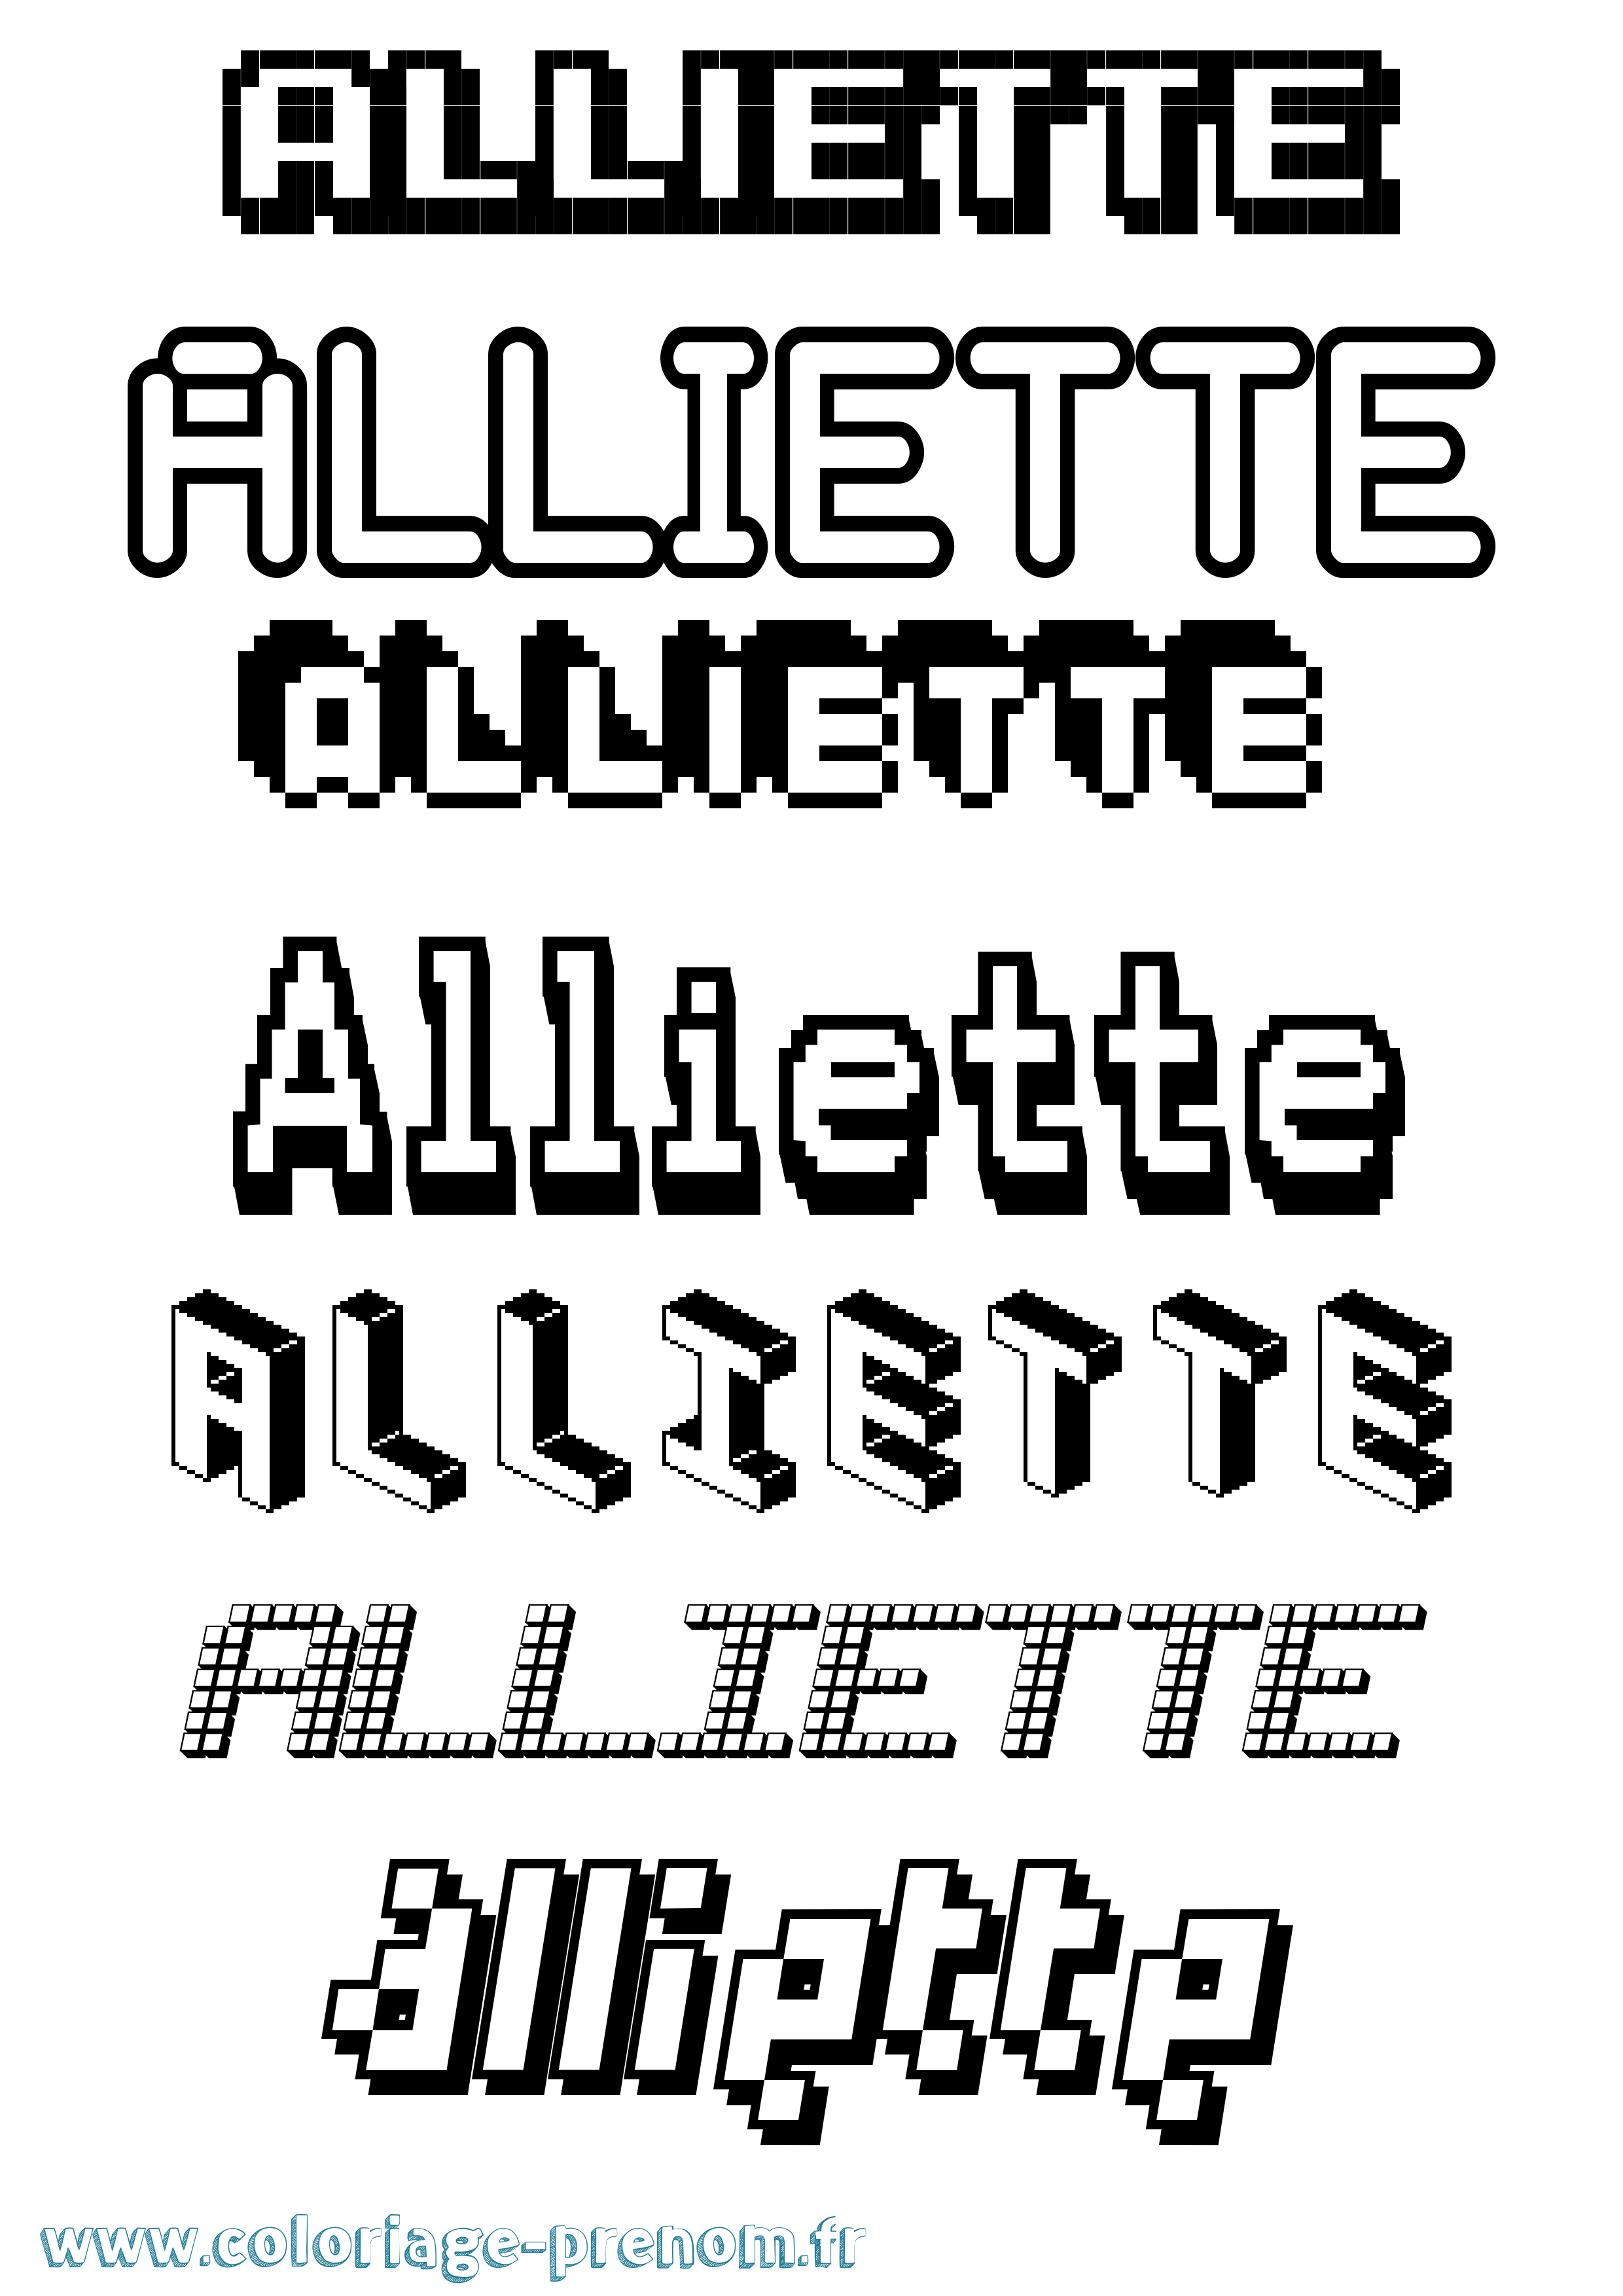 Coloriage prénom Alliette Pixel